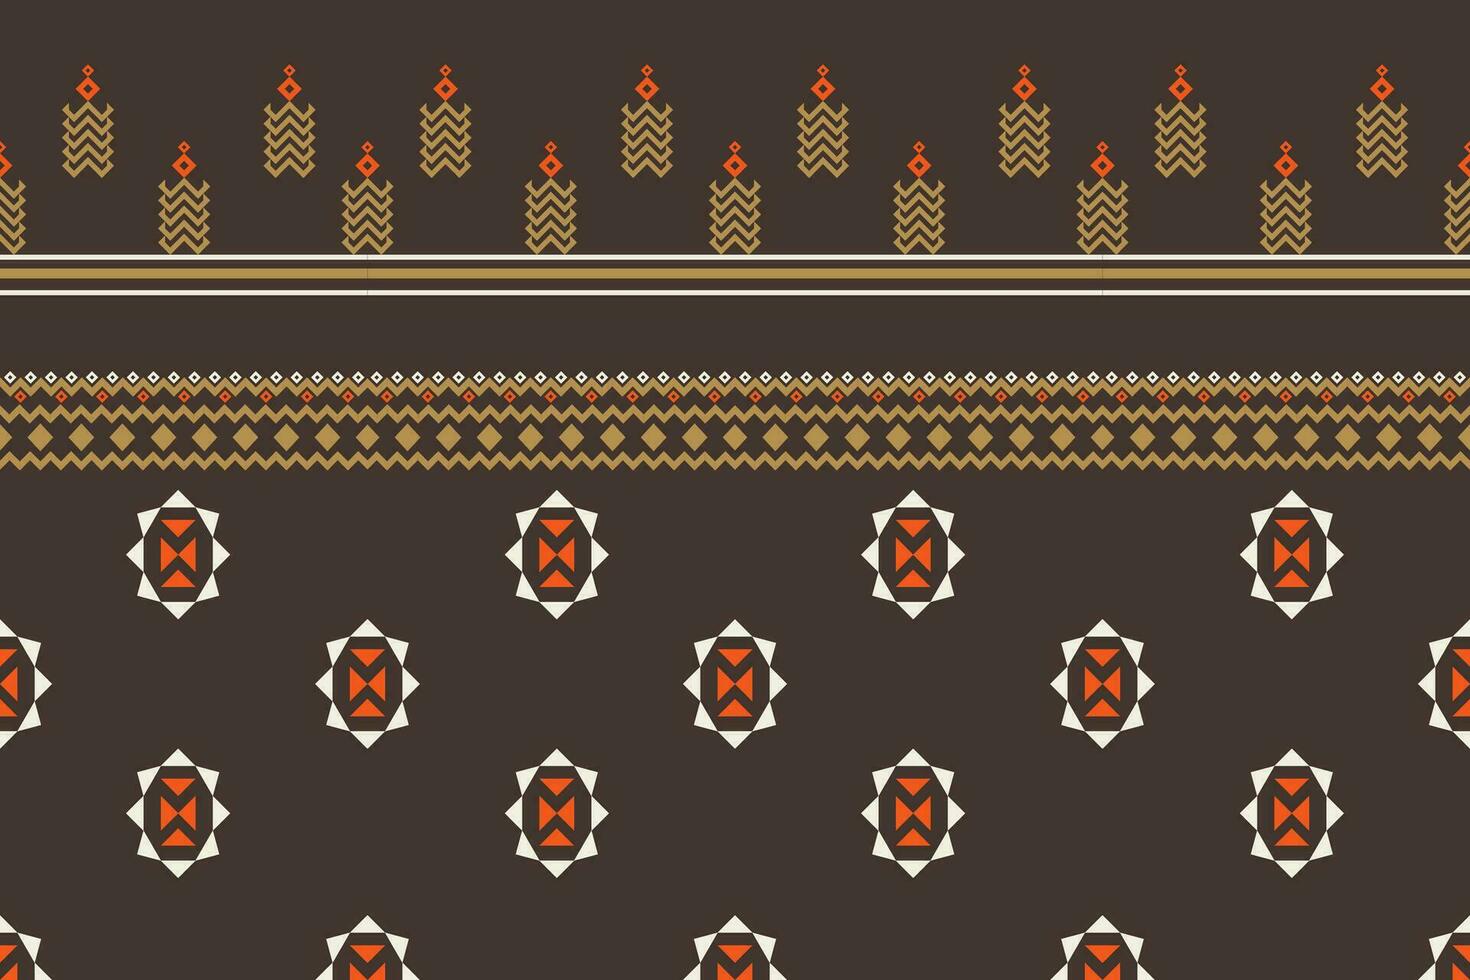 damast- stil mönster för textil- och dekoration.sömlös mönster i tribal.native aztec boho vektor design.bakgrund lappa mönster med traditionell stil, design för dekoration och textilier